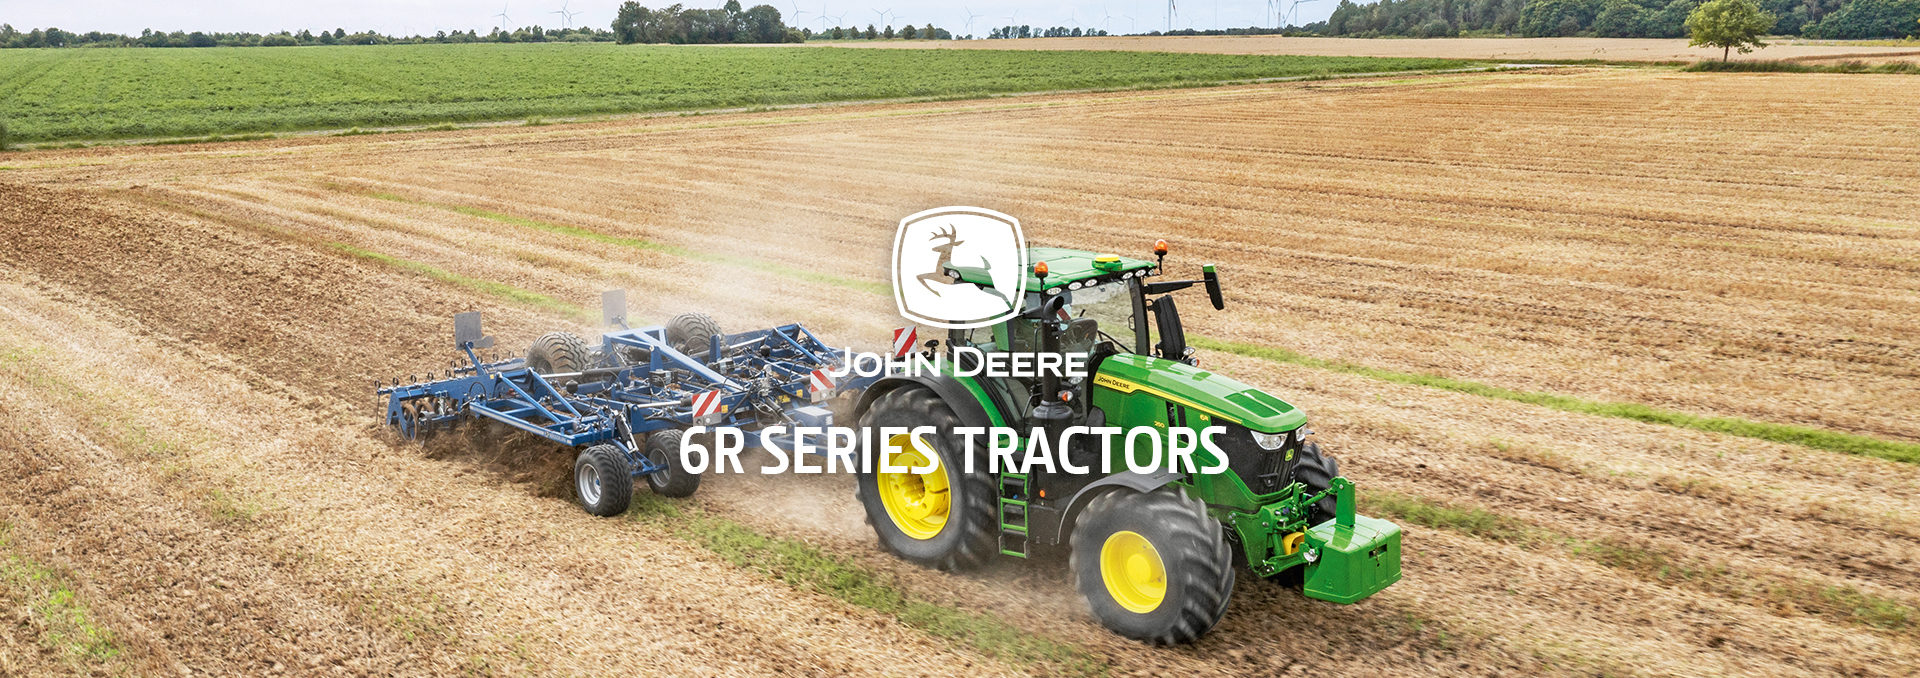 John Deere 6R Series Tractors